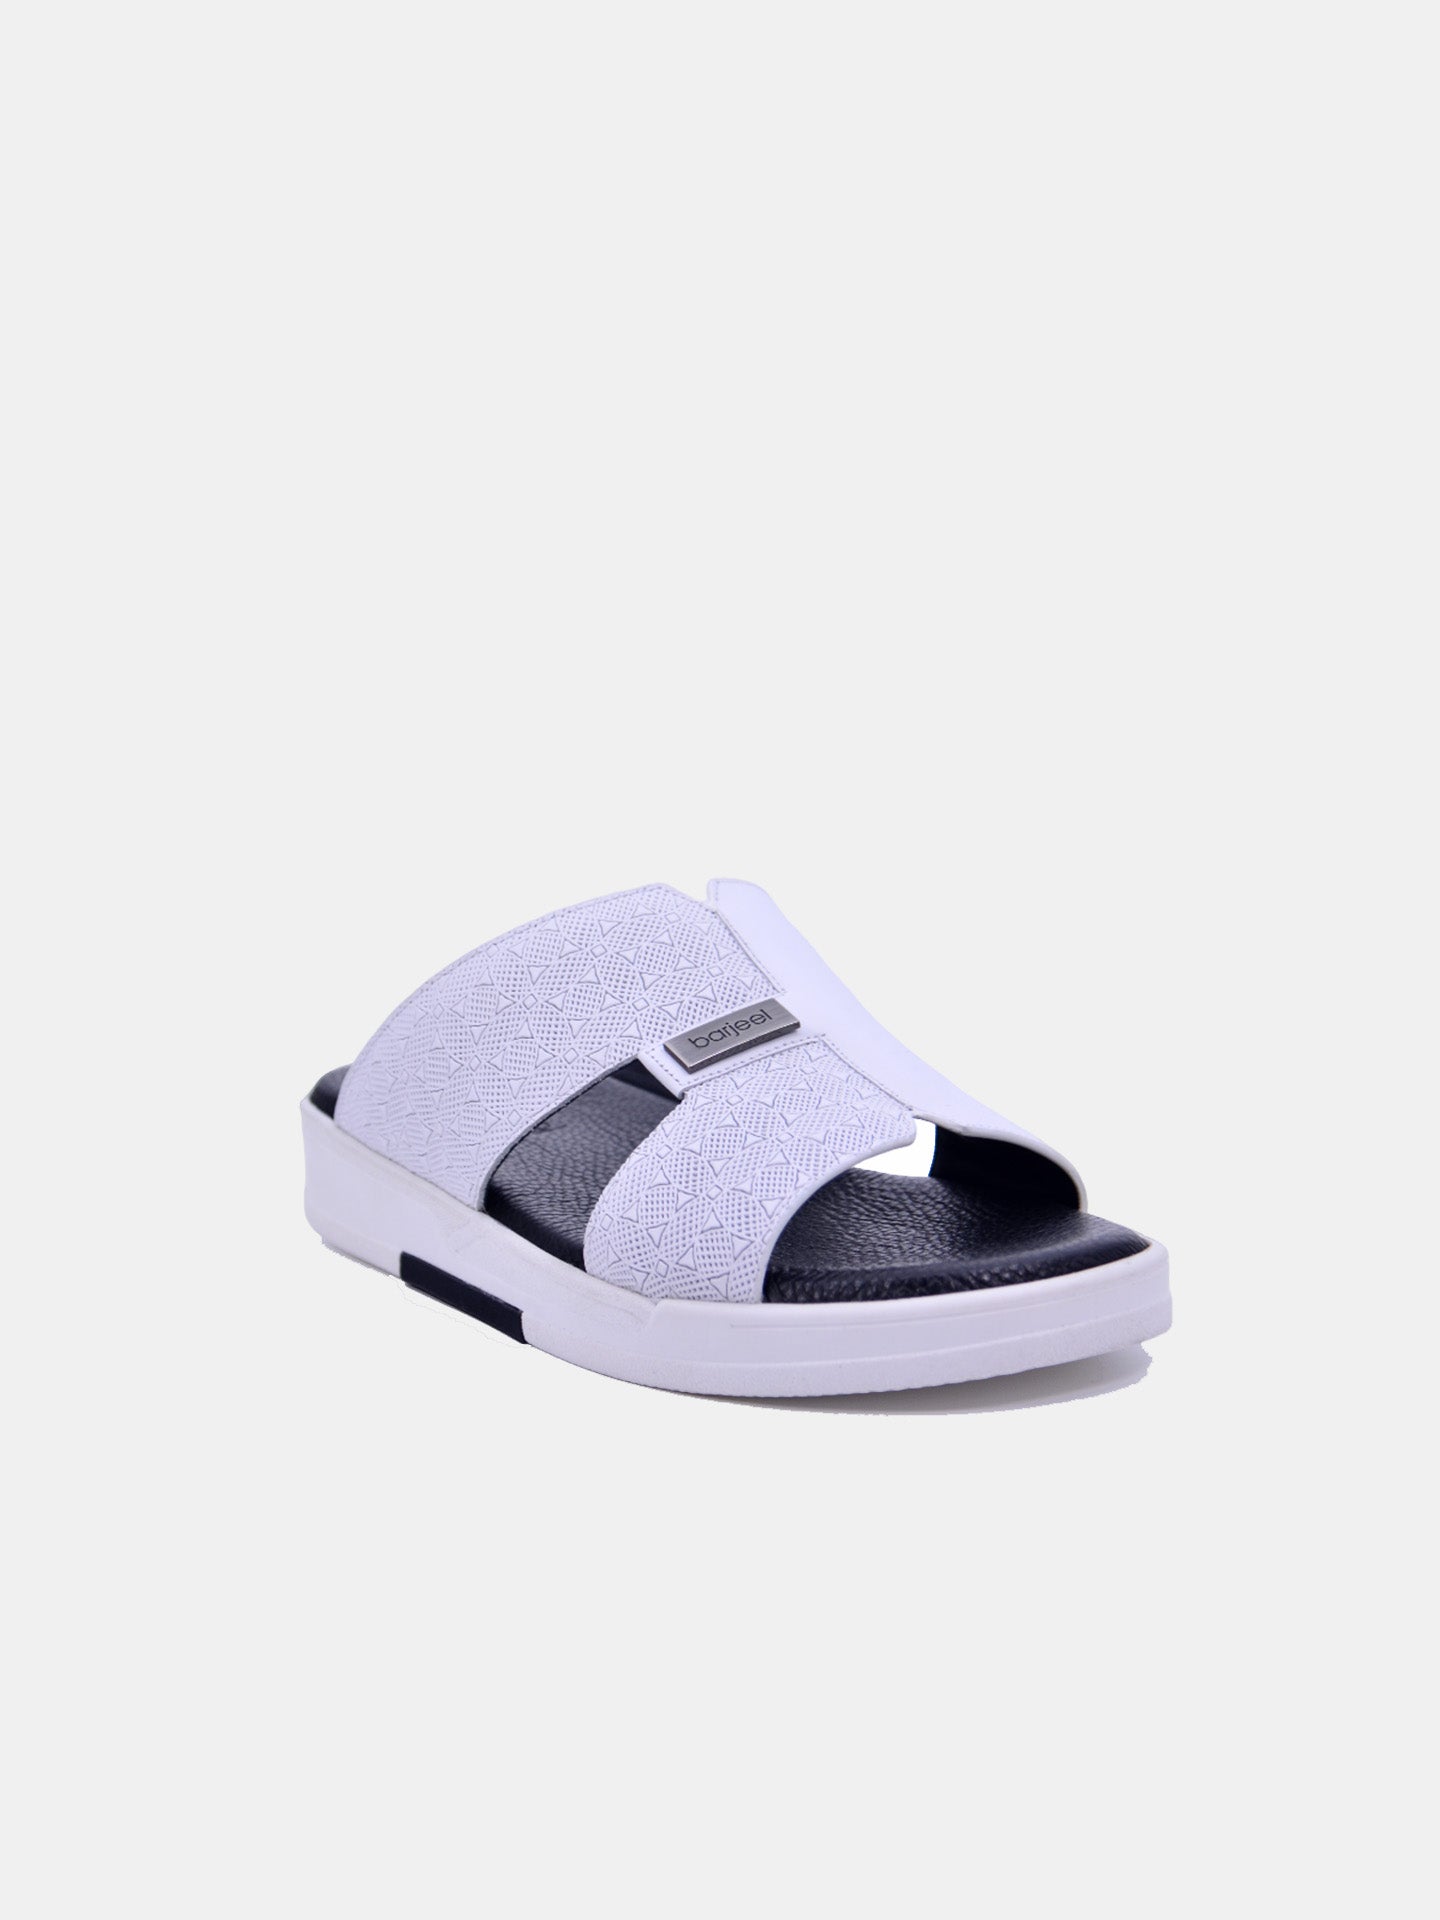 Barjeel Uno MSA-116 Men's Arabic Sandals #color_White